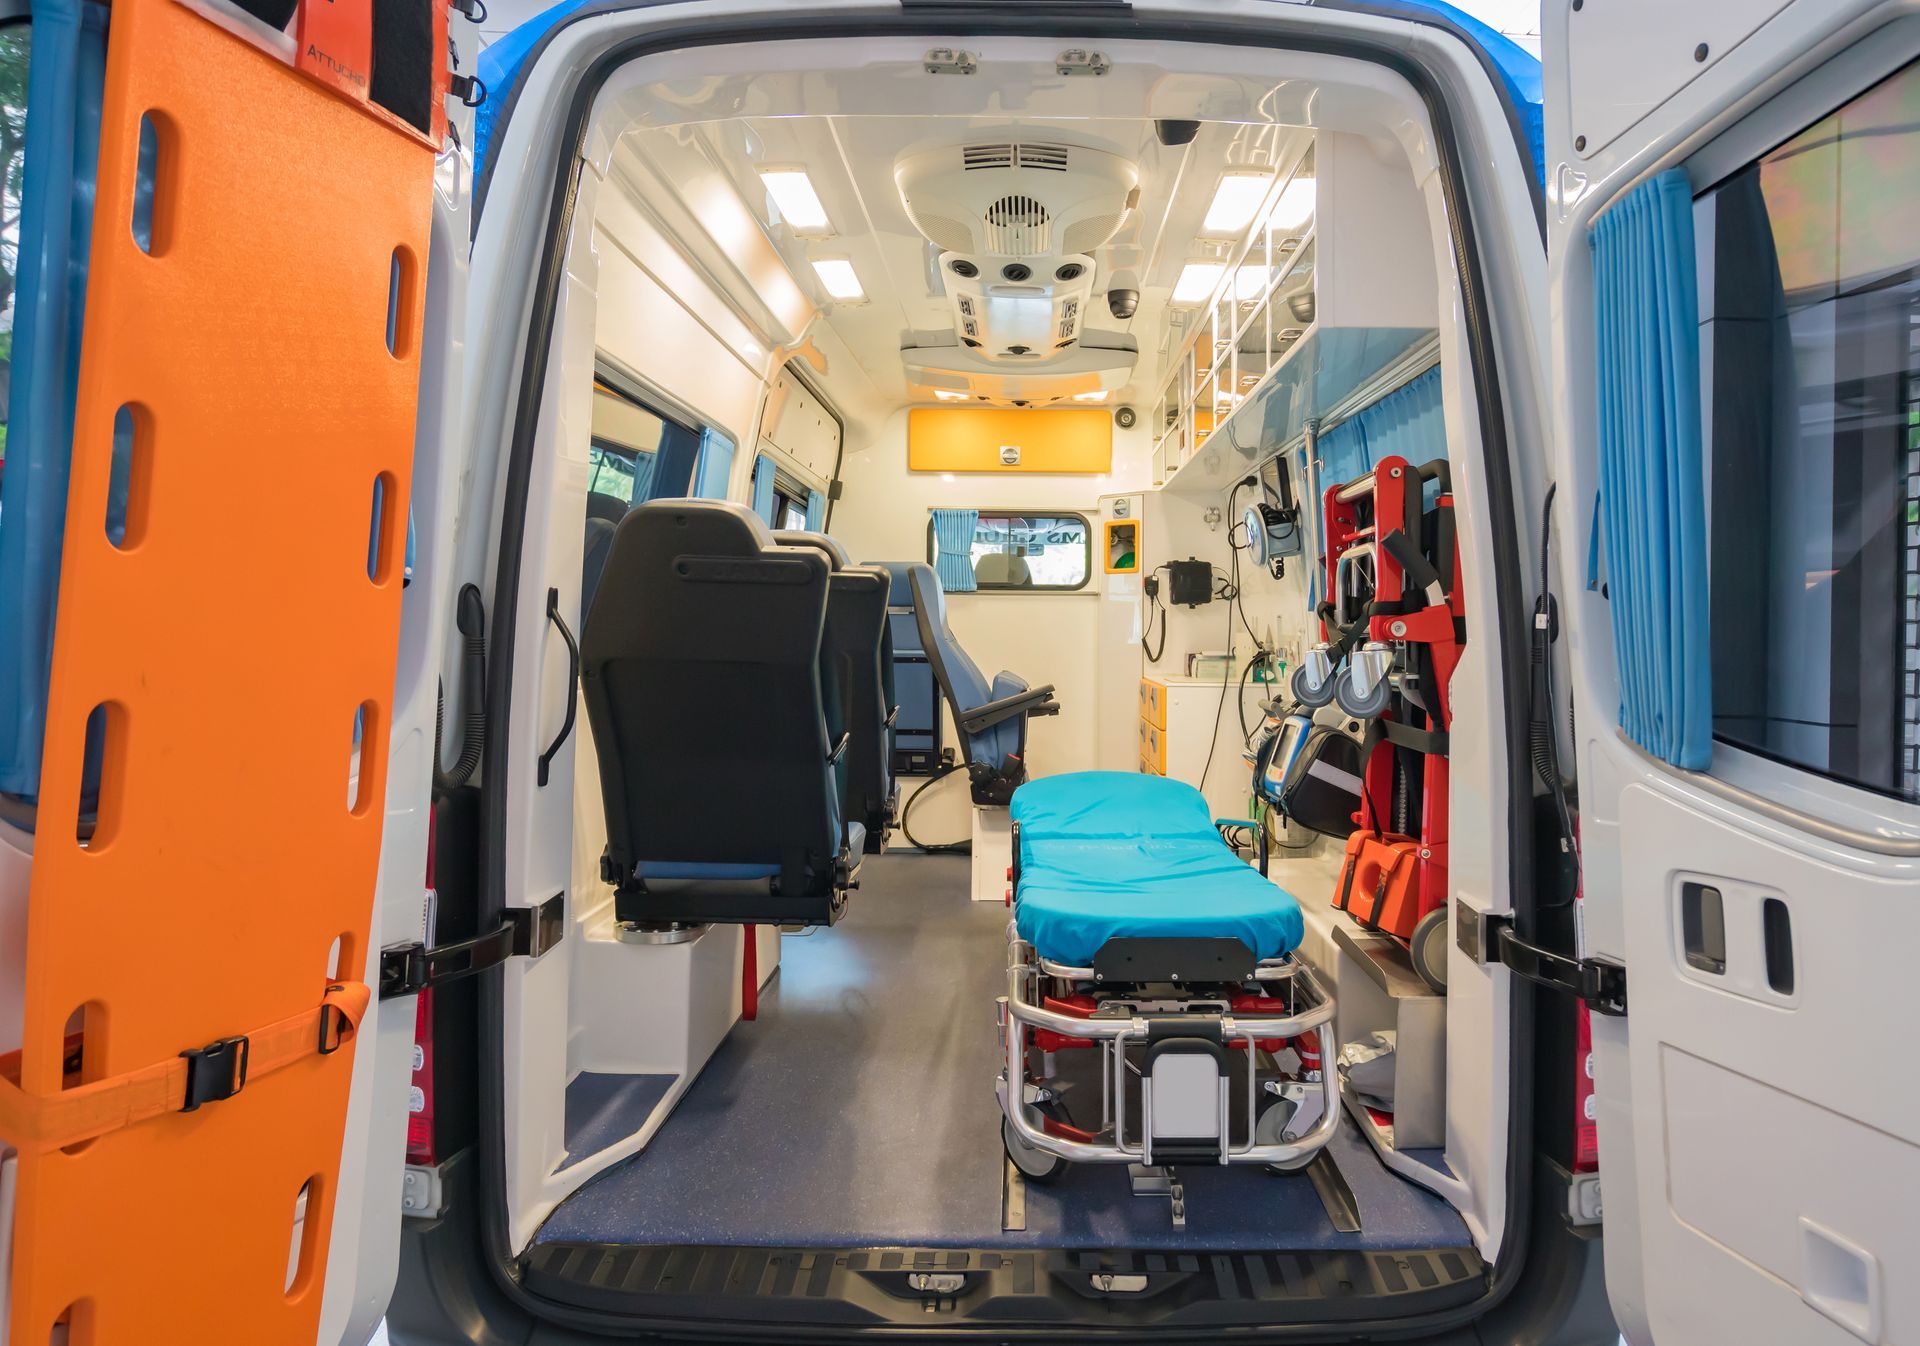 Une ambulance grande ouverte